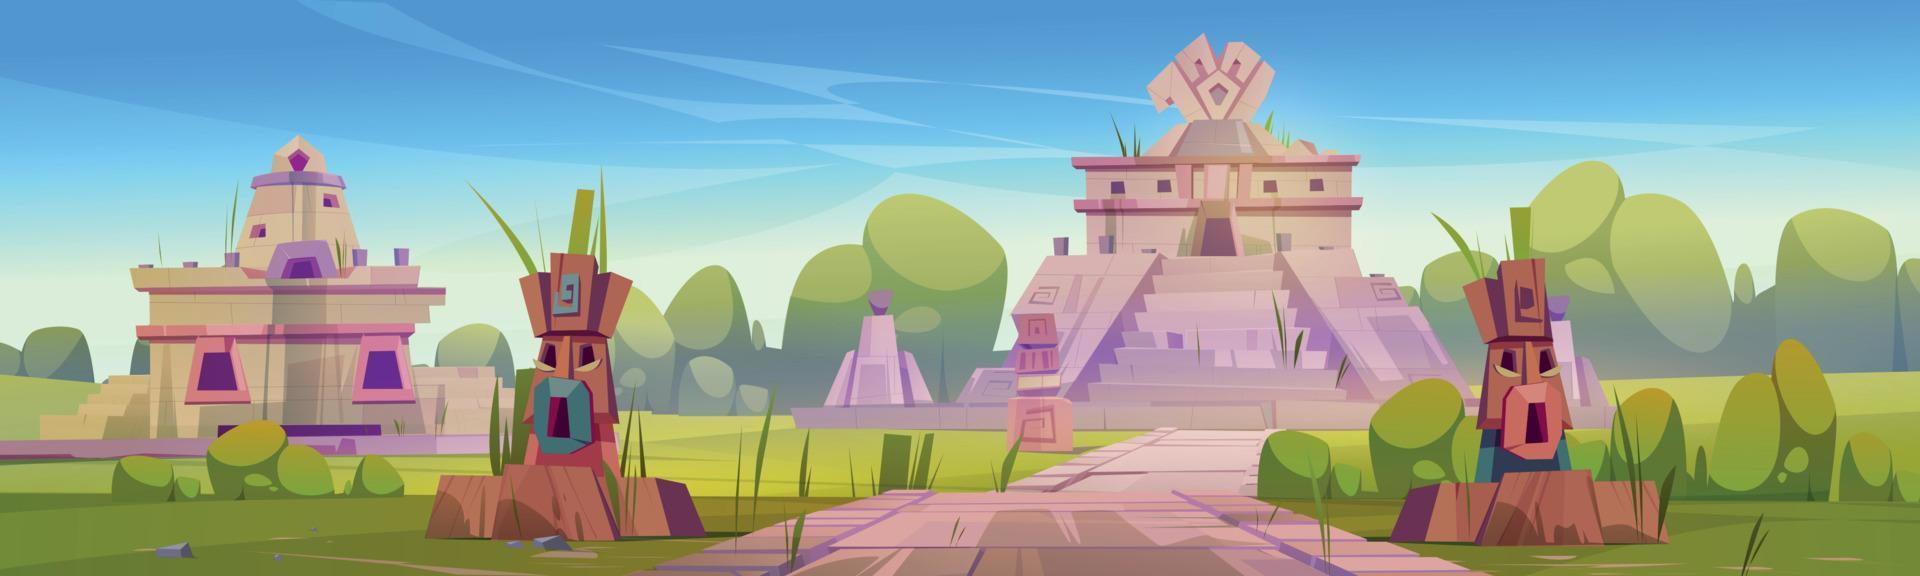 oude ruïnes van aztec tempel, standbeelden en piramide vector